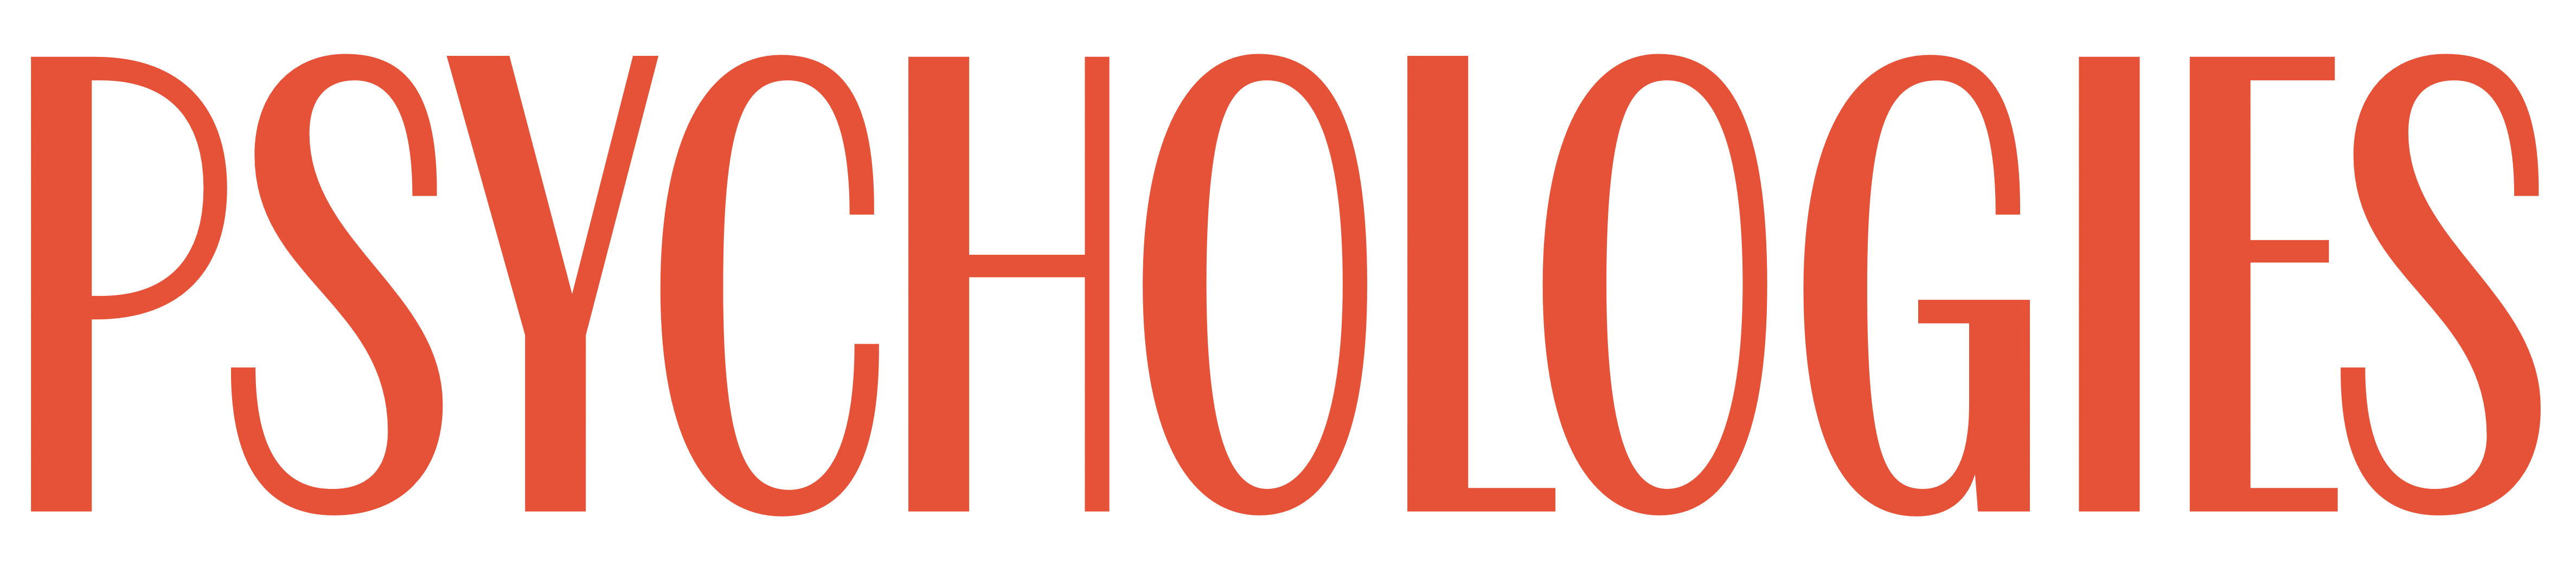 Psychologies logo, logotype